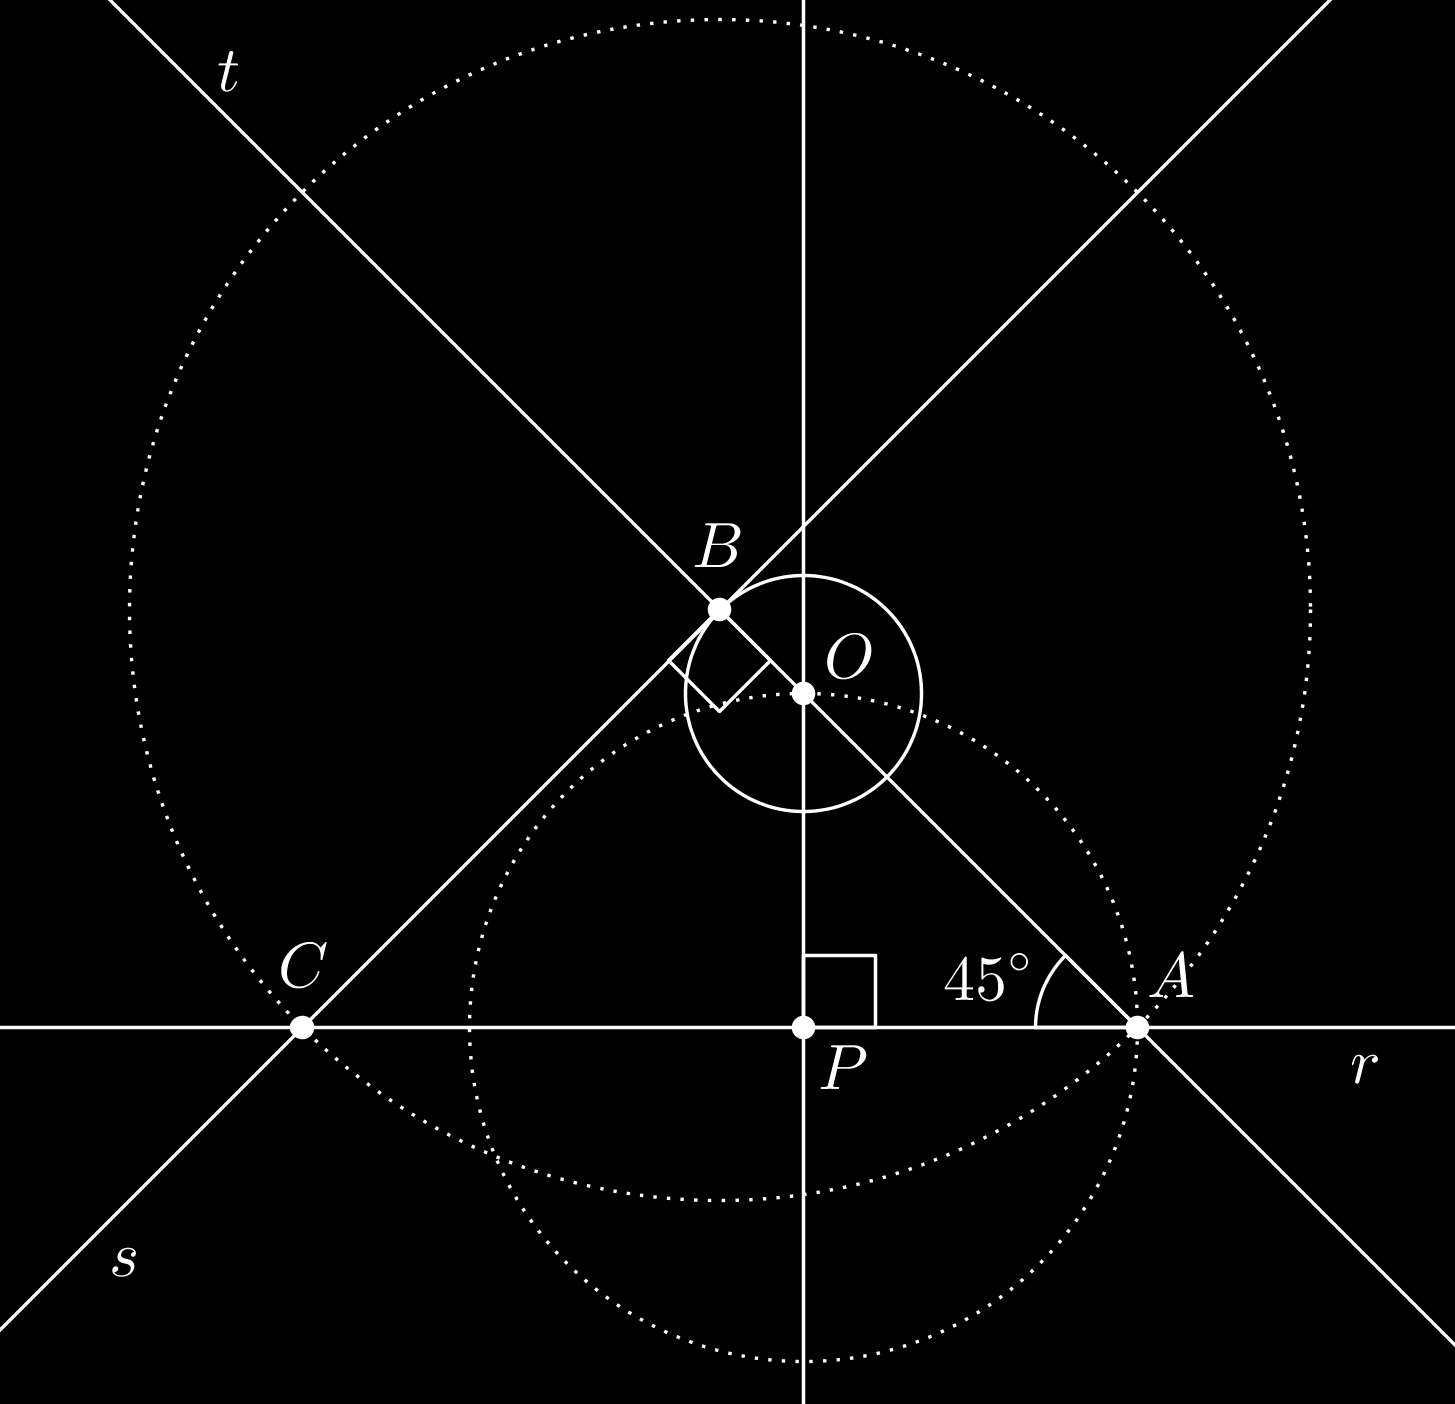 Uma possível construção está representada acima e descrita abaixo: 1. Trace a reta perpendicular a r passando por O e seja P sua interseção com r.